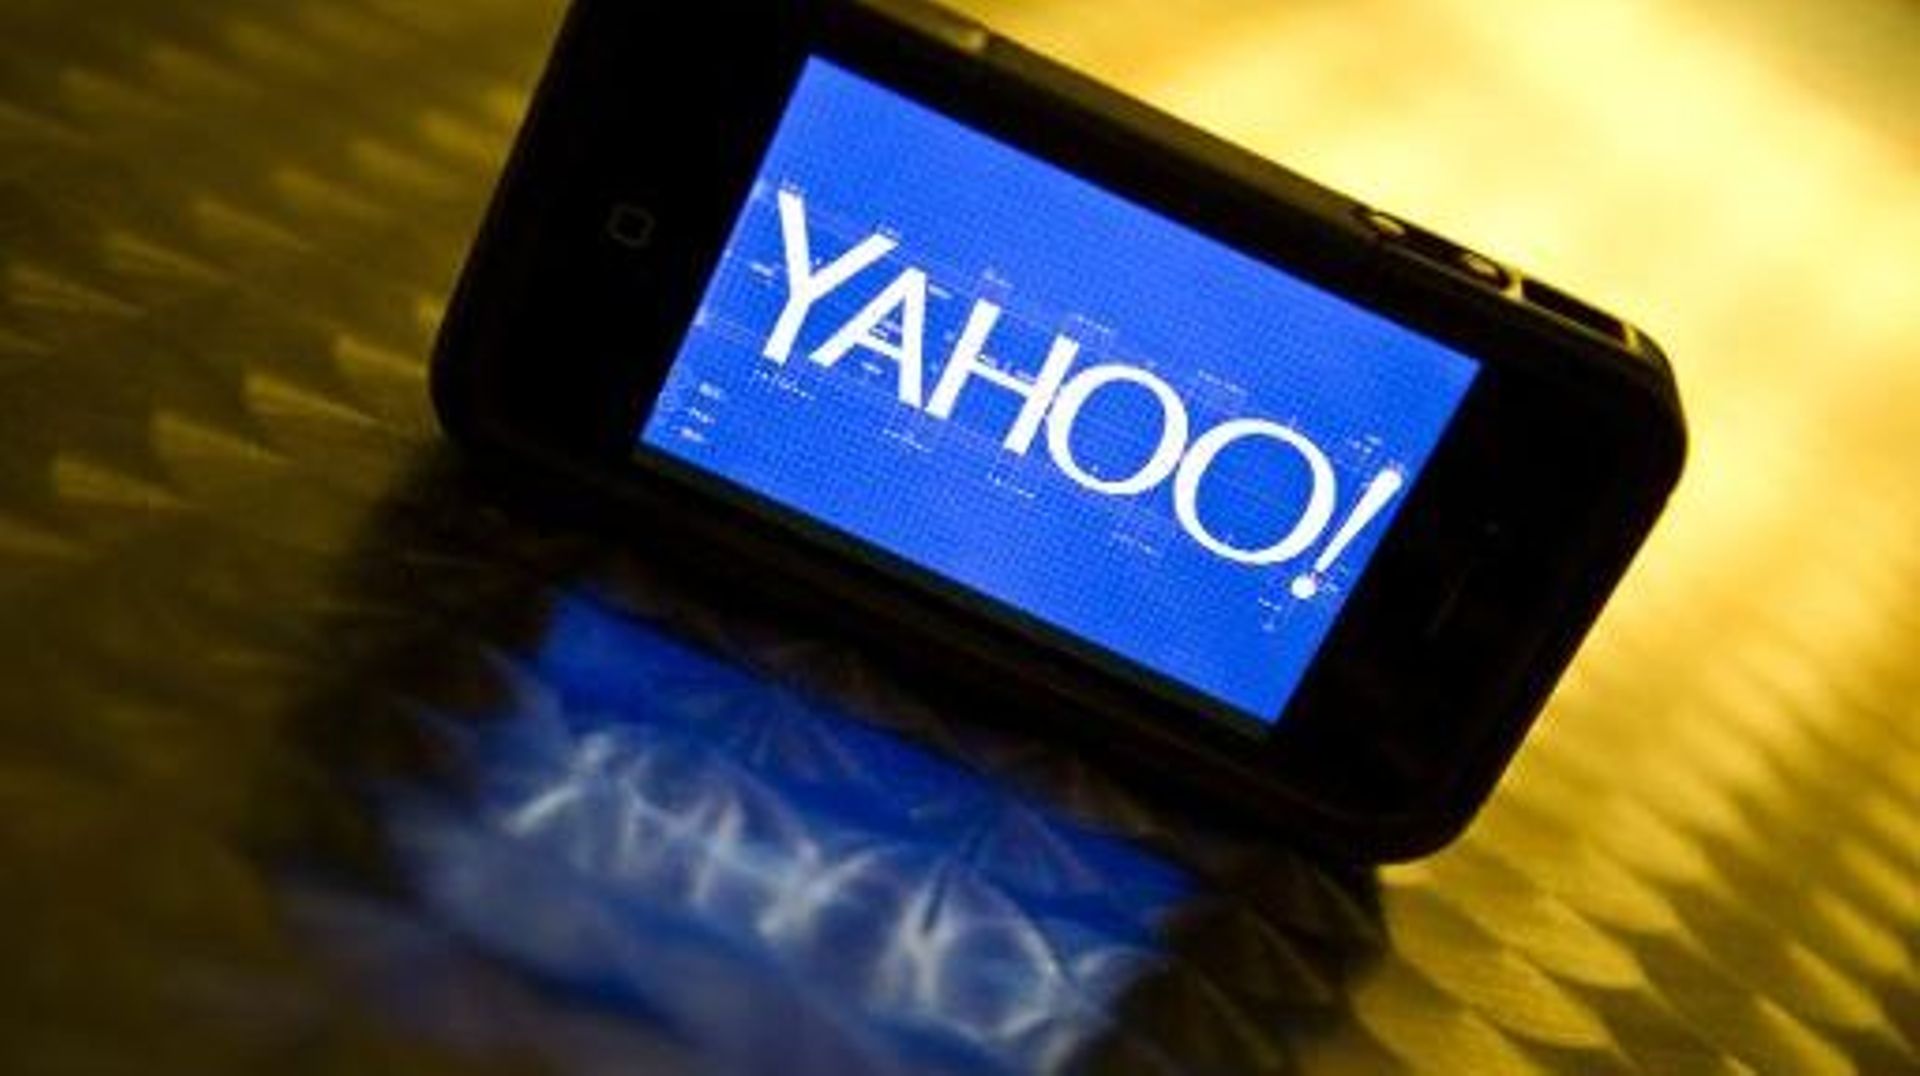 Yahoo! a été contraint de céder aux injonctions de l'administration américaine après avoir été débouté par deux juridictions chargées de contrôler les opérations de renseignement.